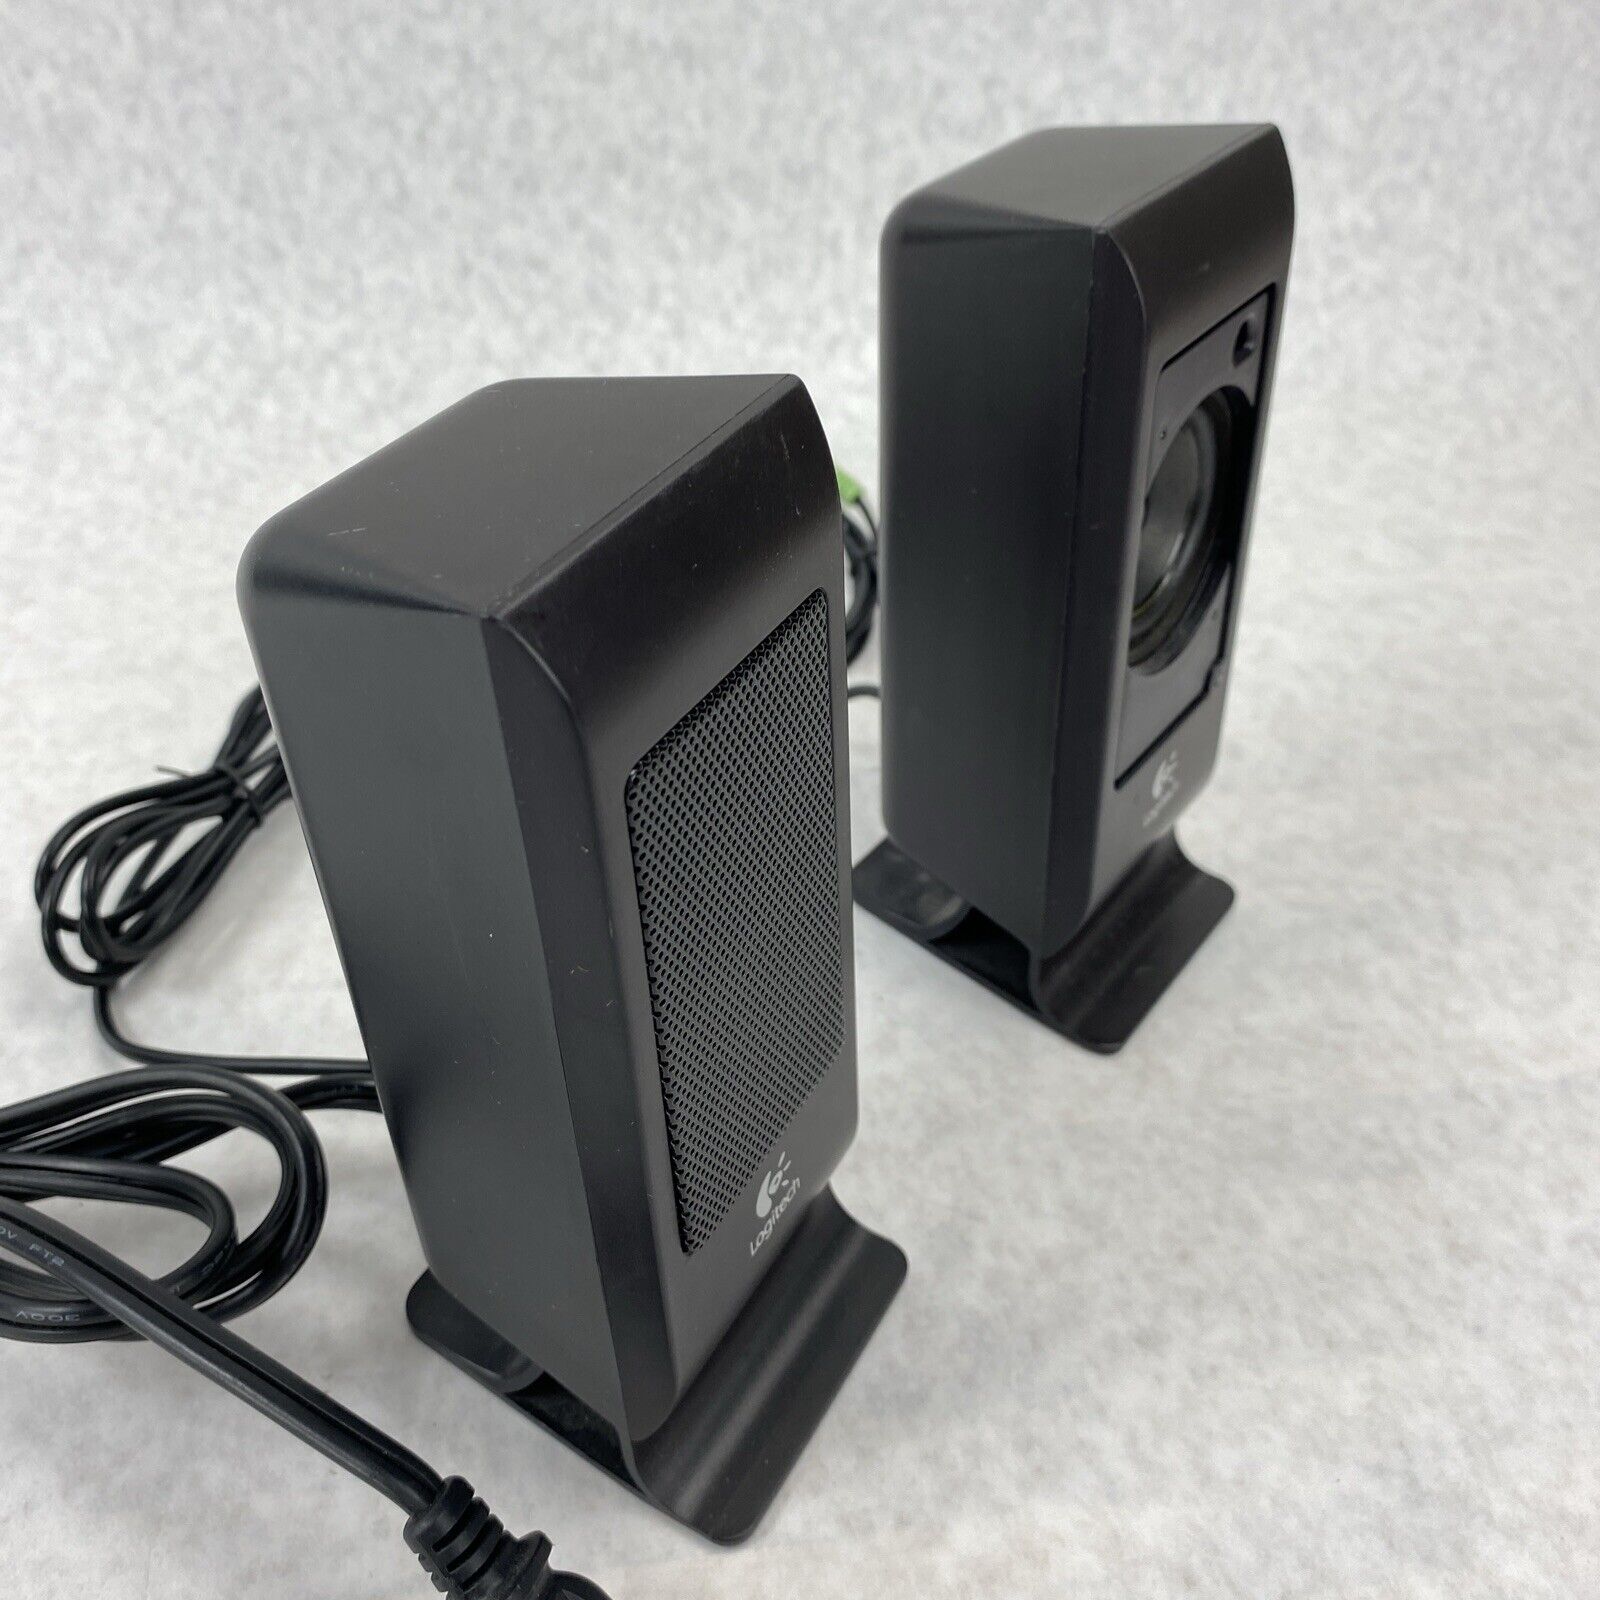 Logitech S-100 BLK 5 Watts RMS 2.0 Desktop Speaker System